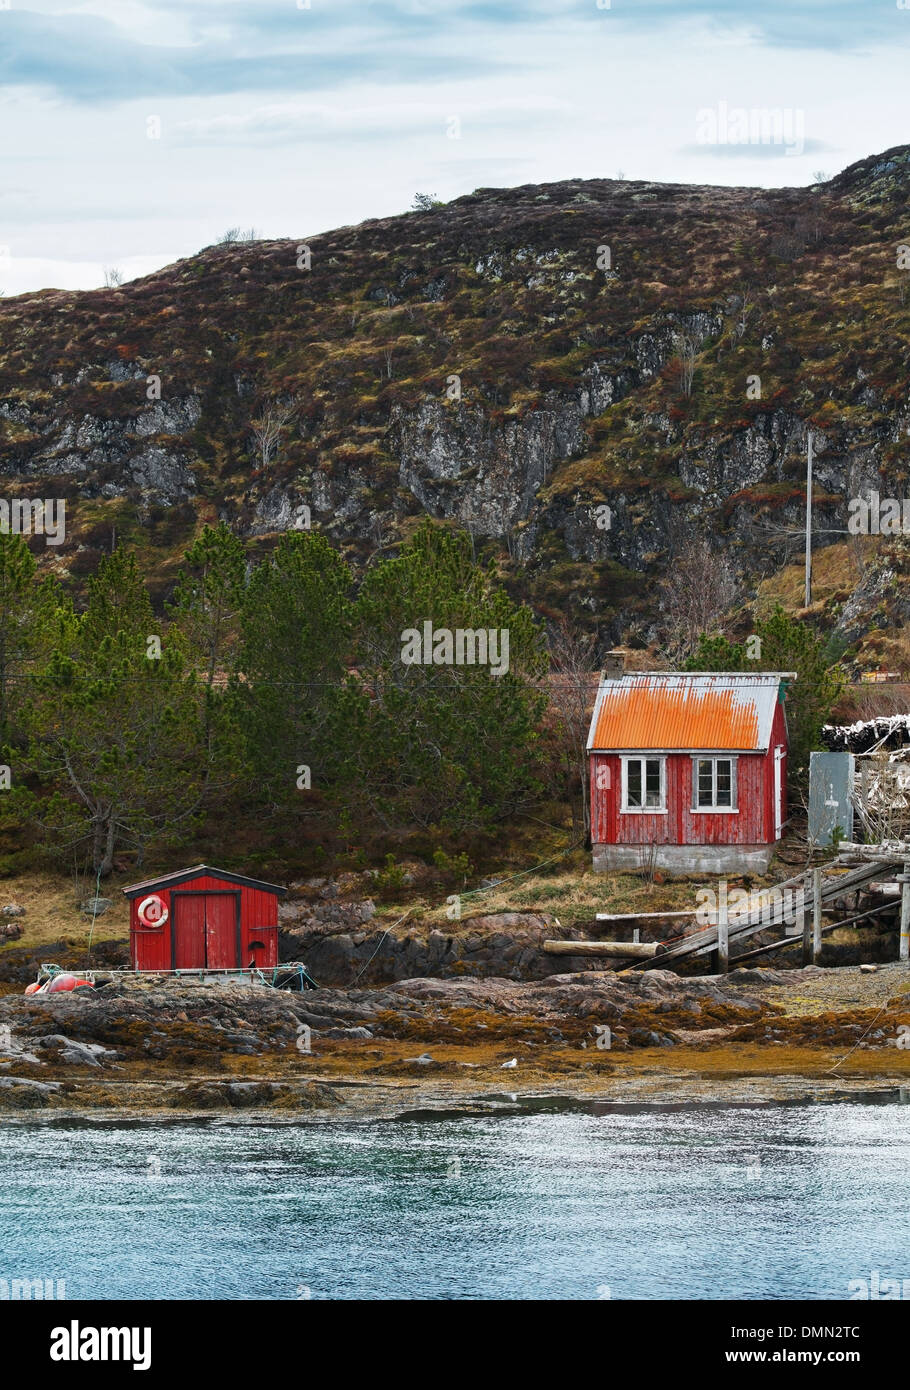 Vieilles maisons en bois rouge norvégienne sur la côte rocheuse Banque D'Images